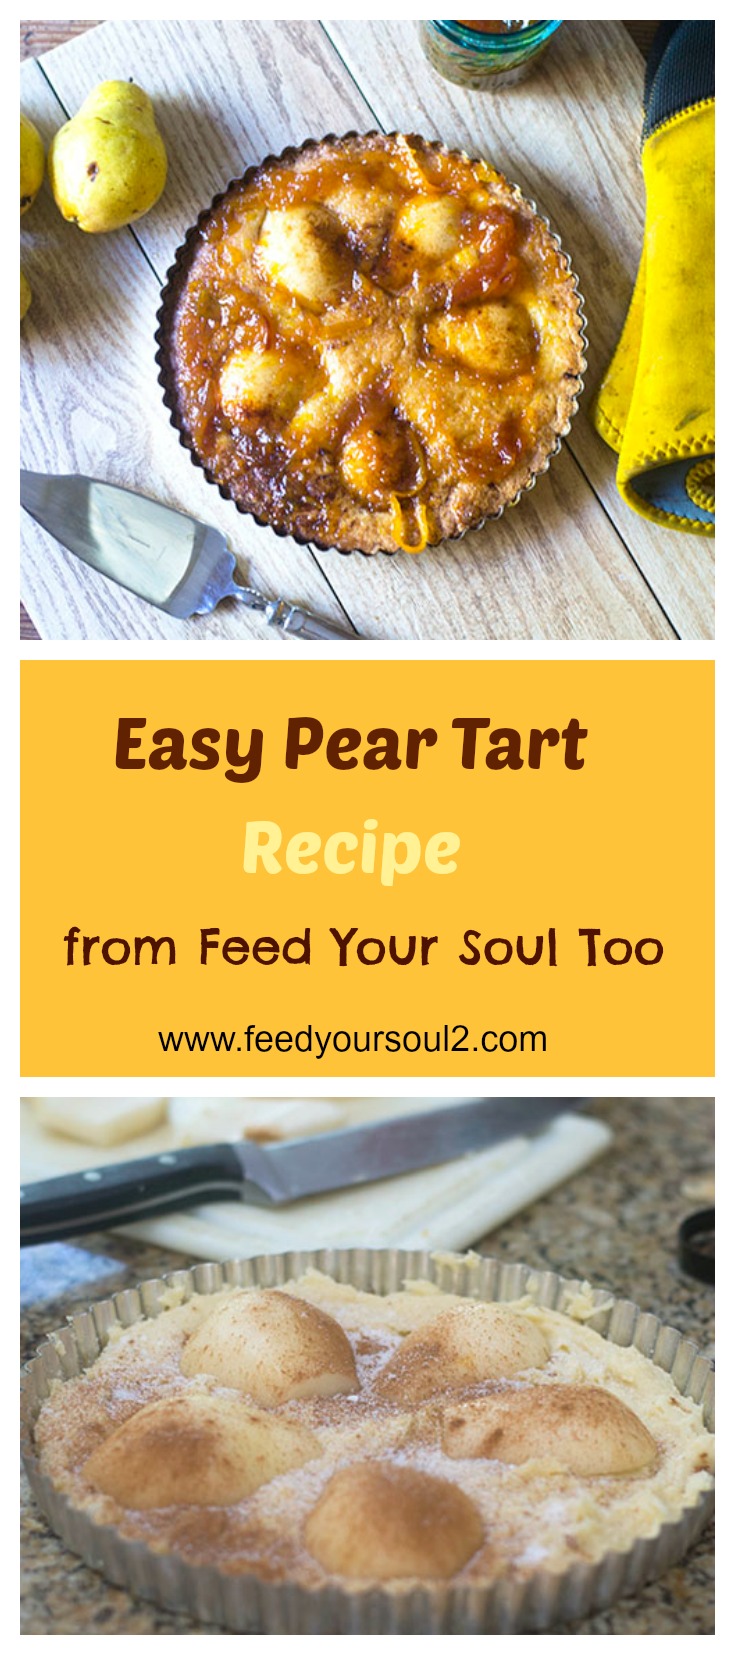 Easy Pear Tart Recipe #dessert #pears #tart | feedyoursoul2.com